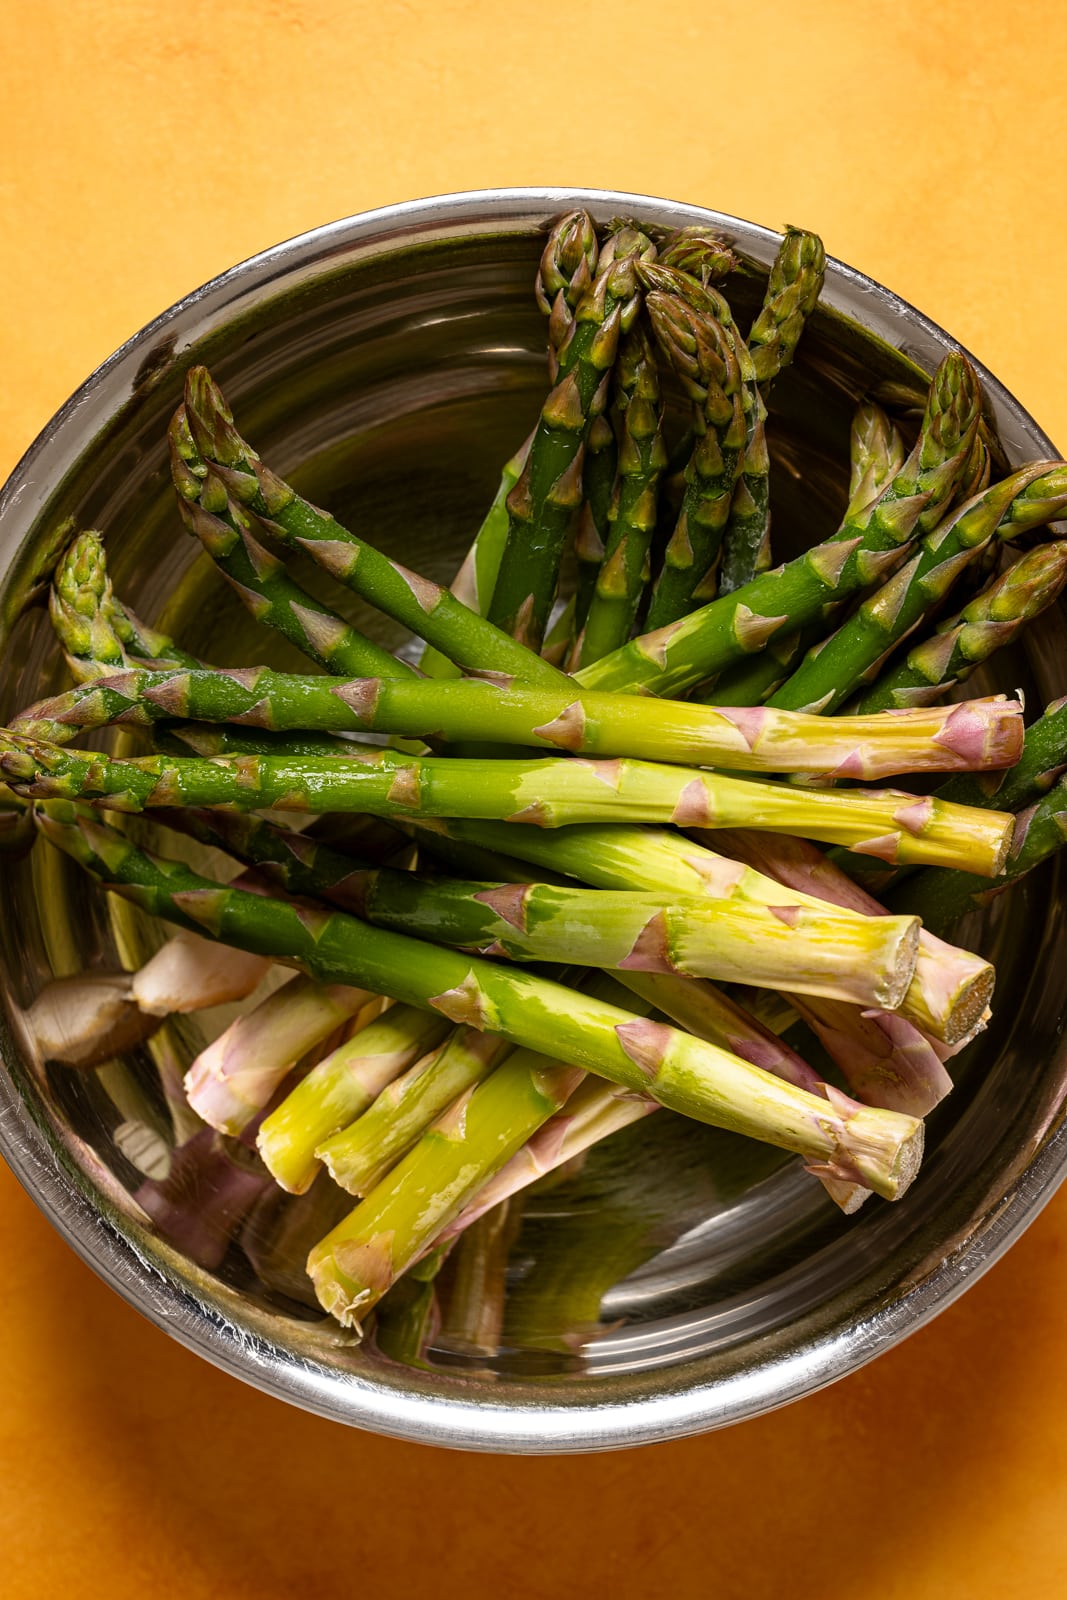 Asparagus in a silver bowl.